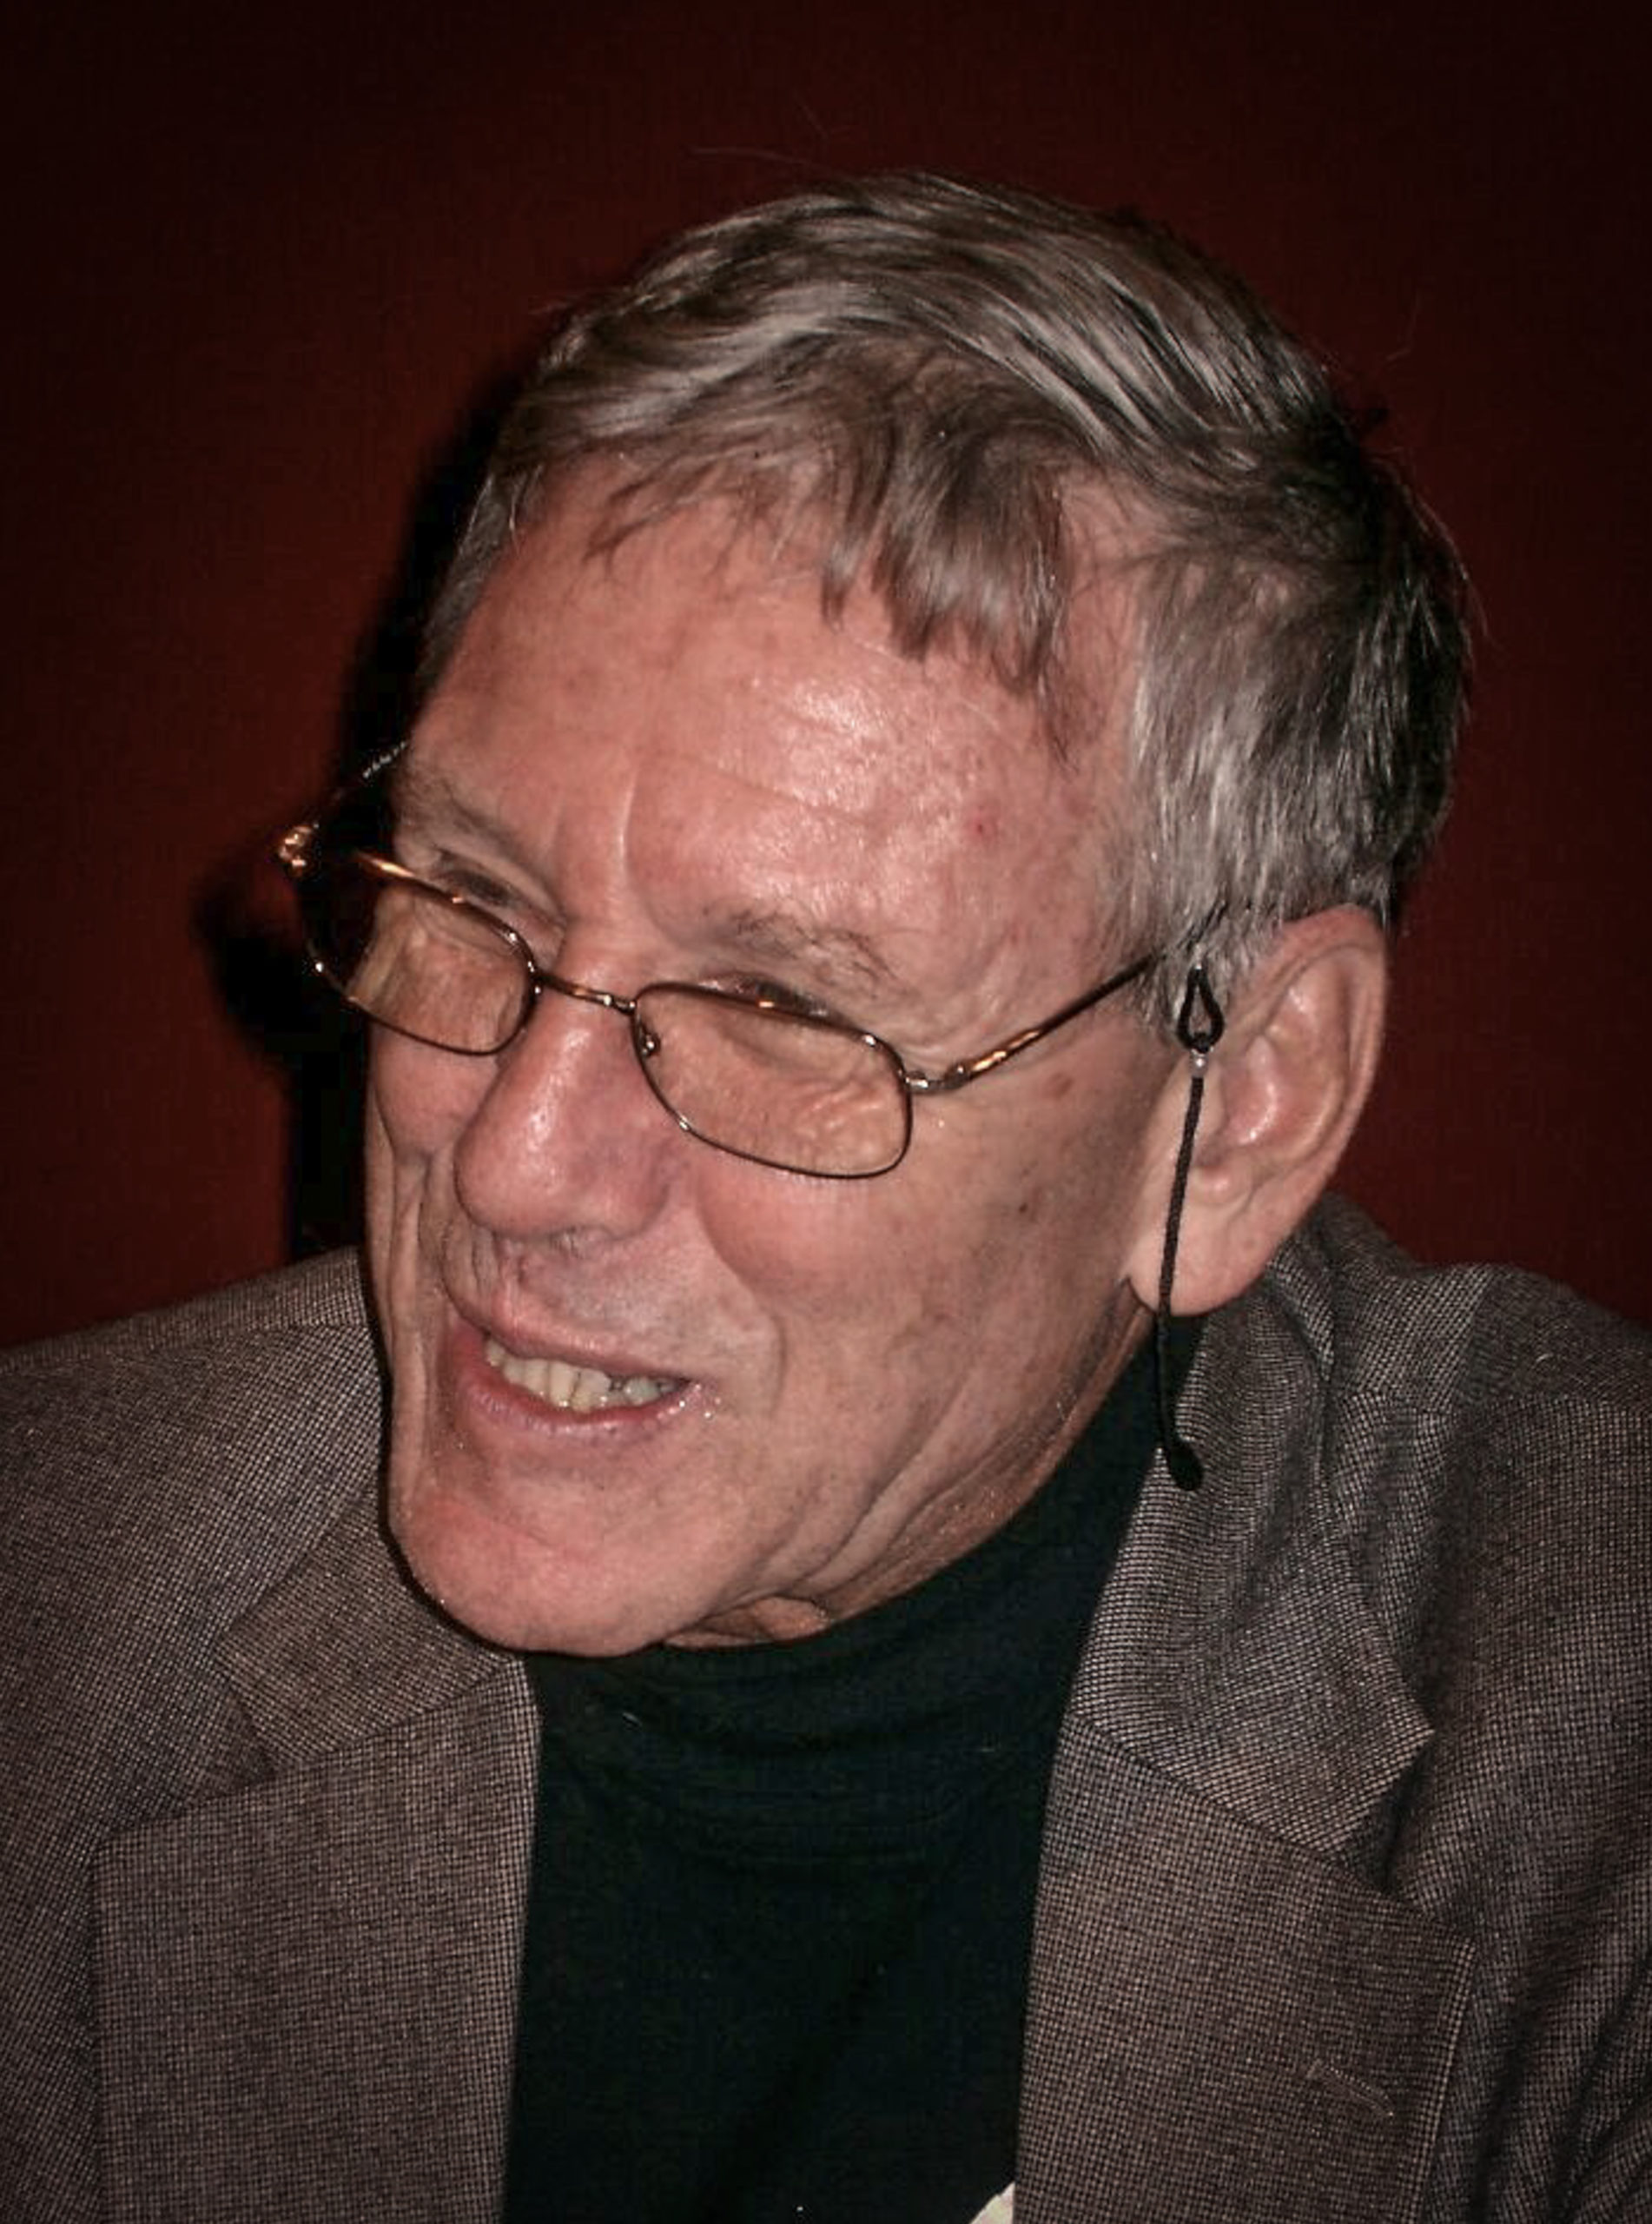 Amos Oz, 1939-2018